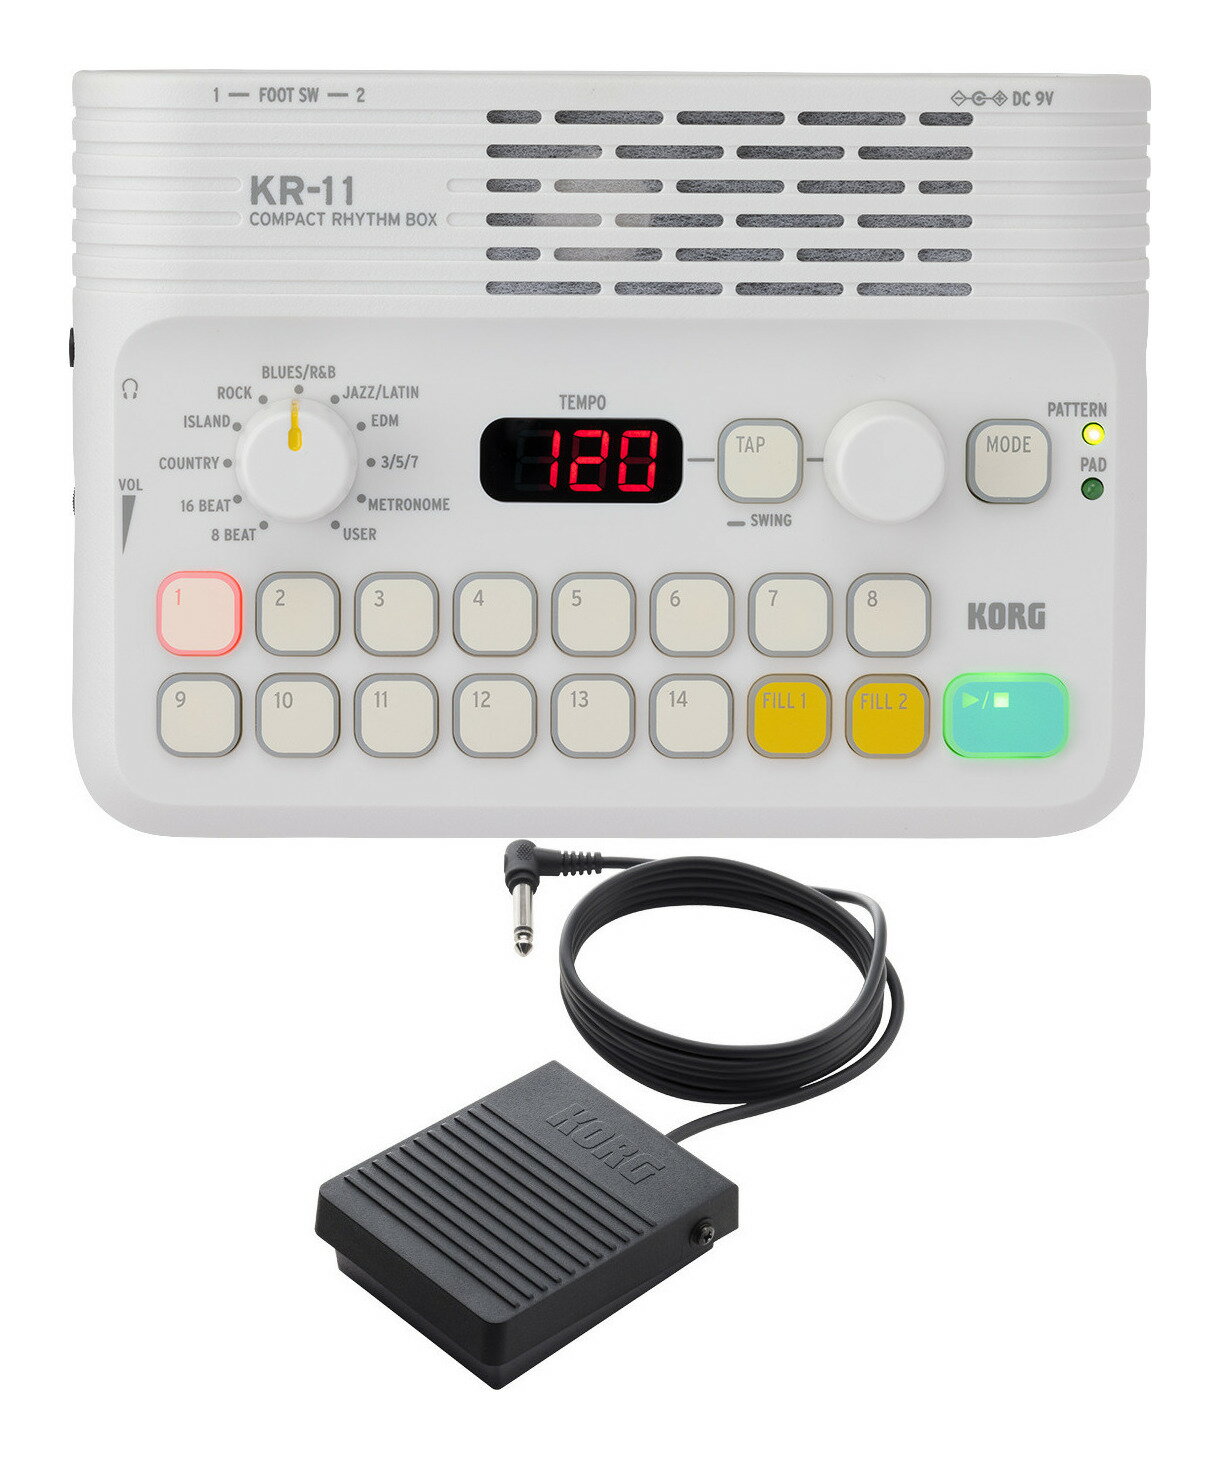 【送料込】KORG KR-11+PS-3 コンパクト リズム ボックス/純正ペダルスイッチ/PS-3付 ドンカマチック